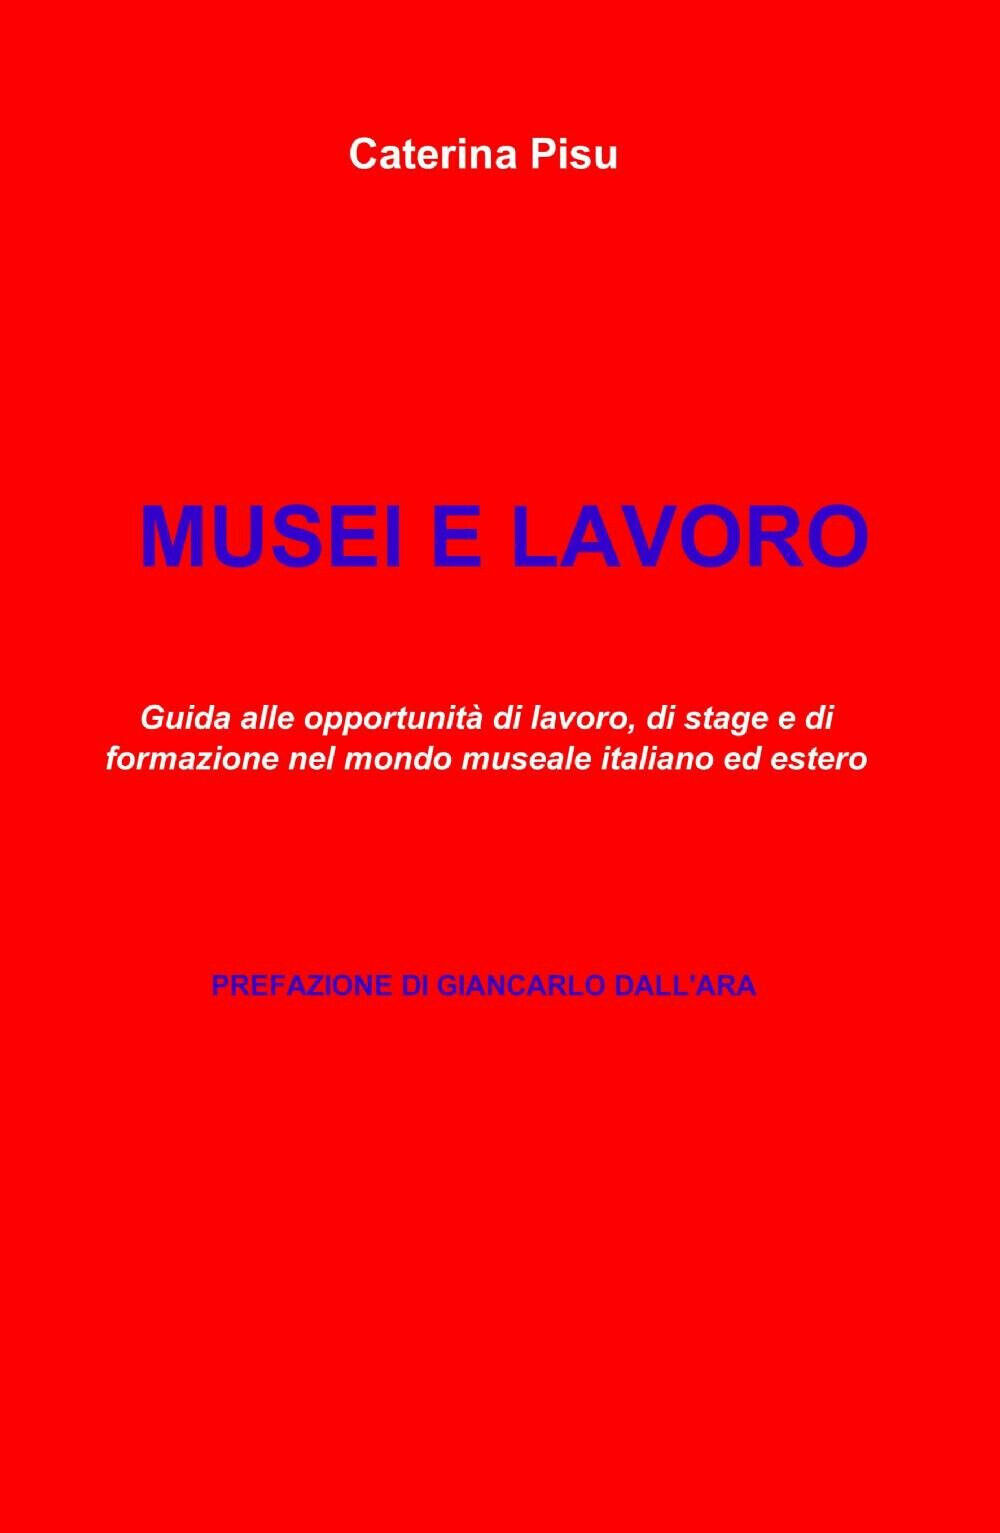 Musei e lavoro - Caterina Pisu - il miolibro, 2013 libro usato